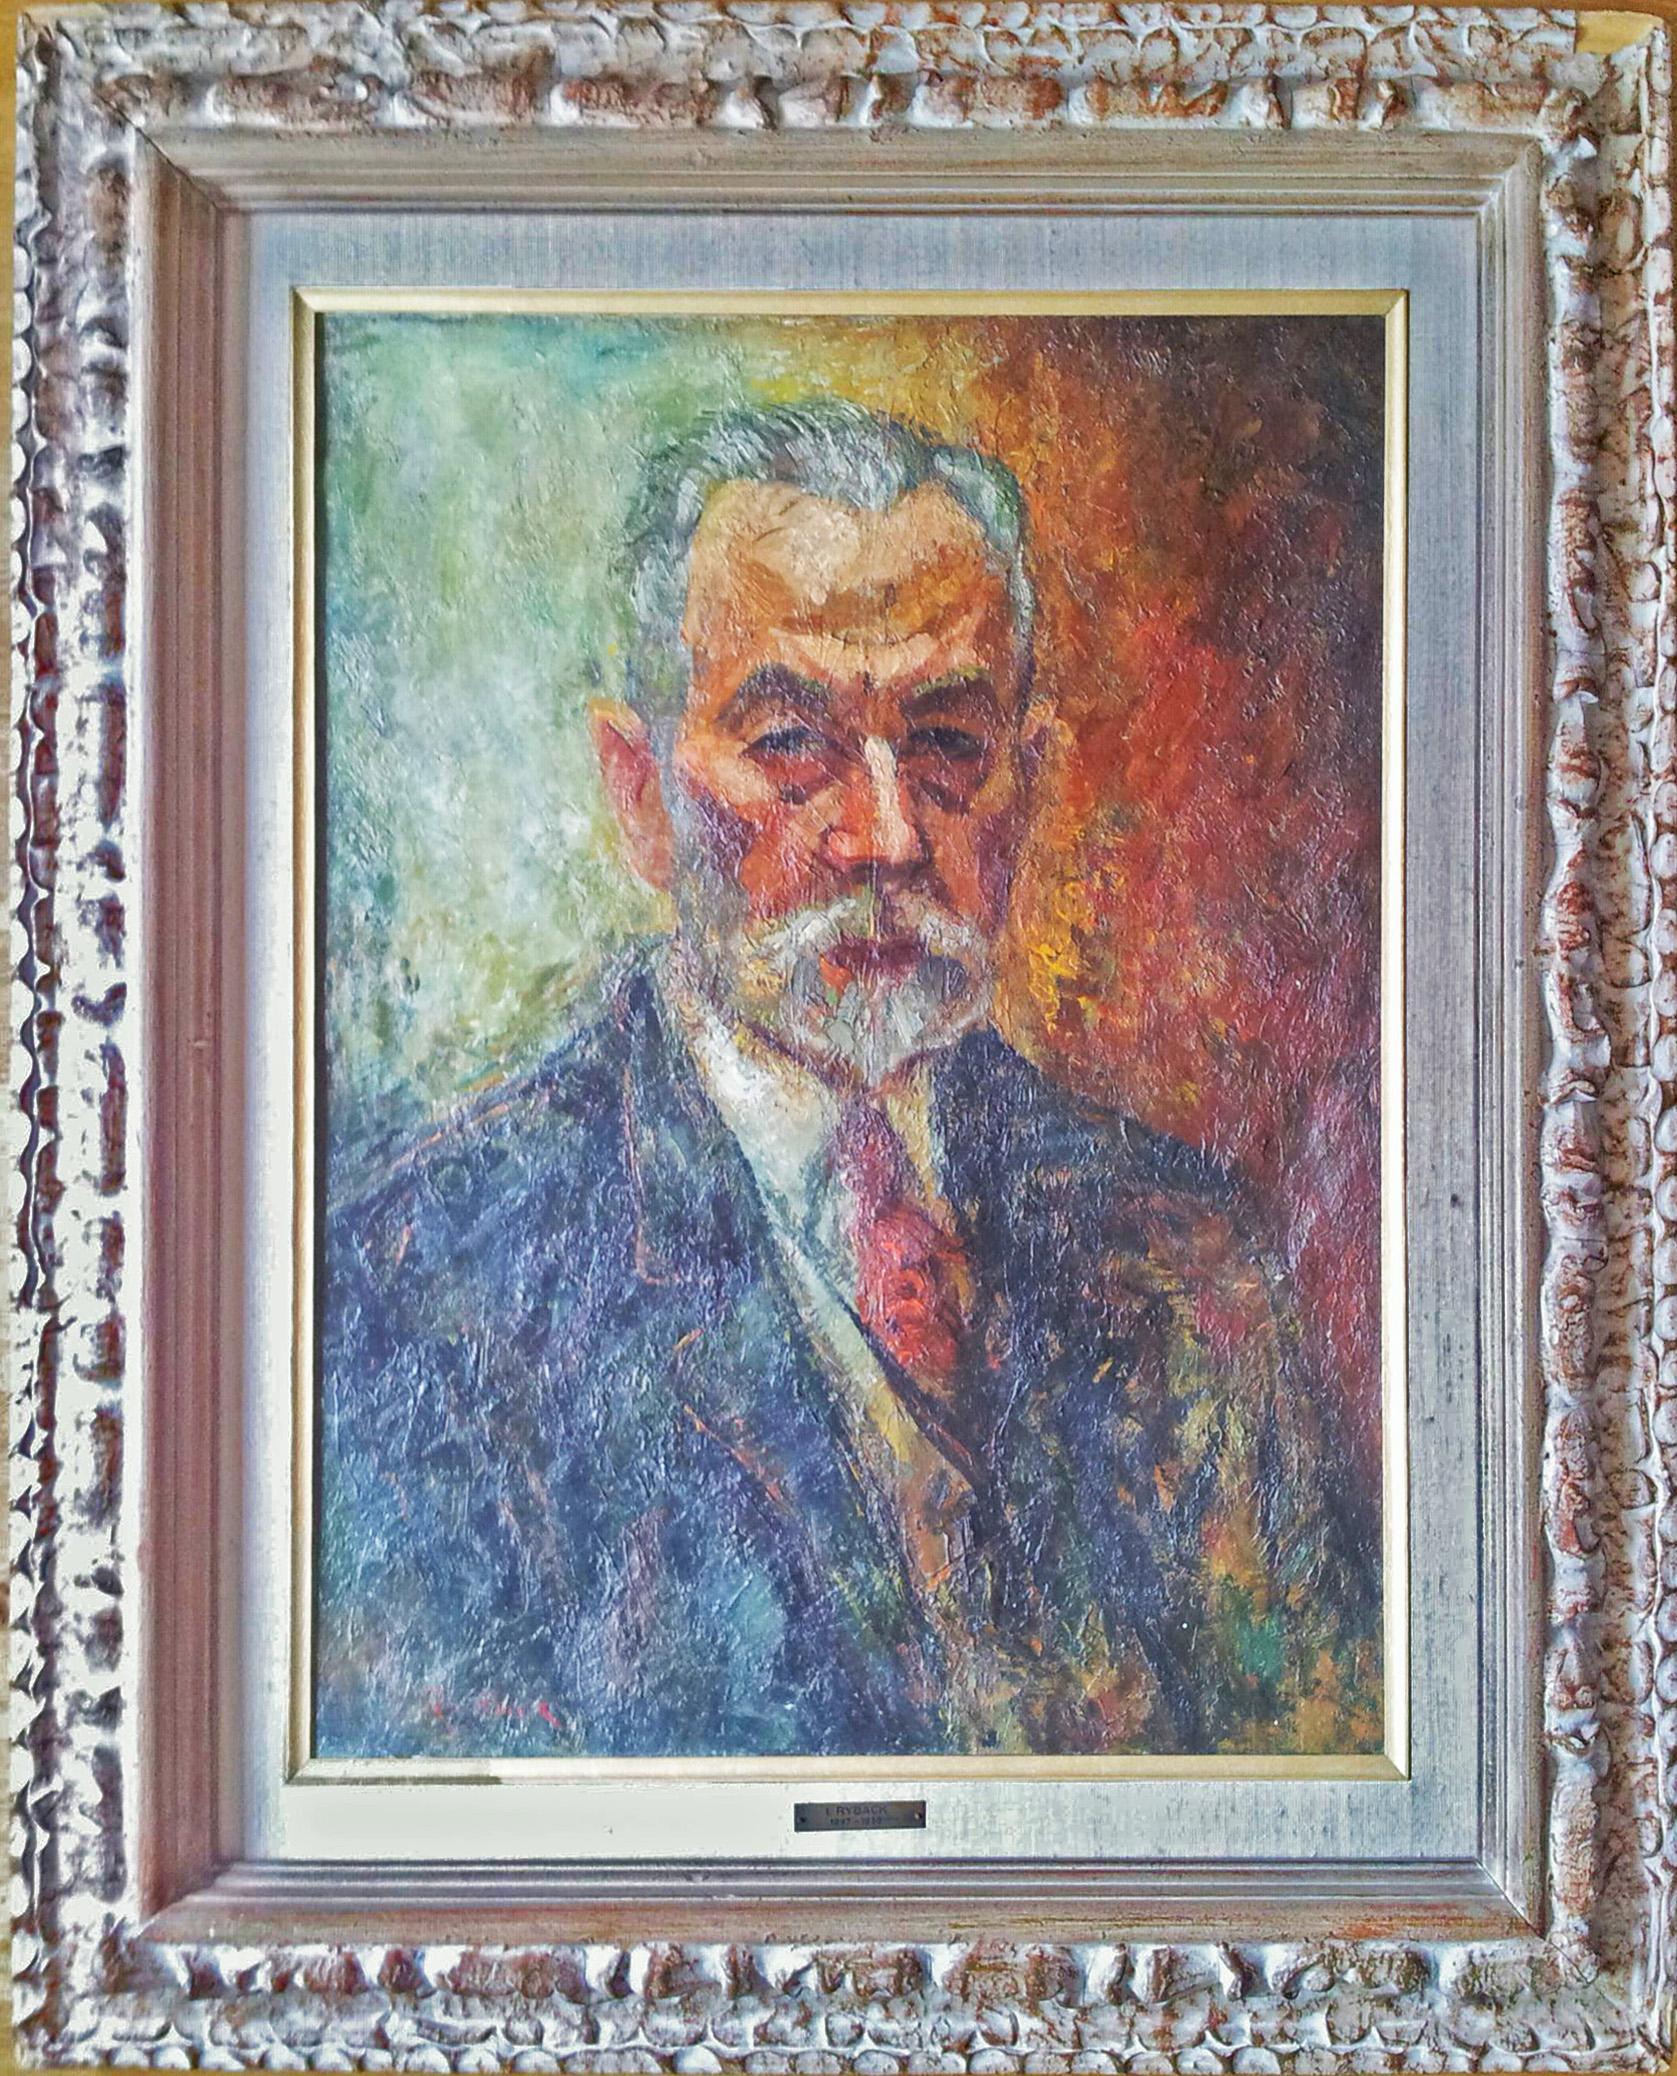 Portrait d'un homme - Peinture russe ukrainienne - Painting de Issachar Ryback